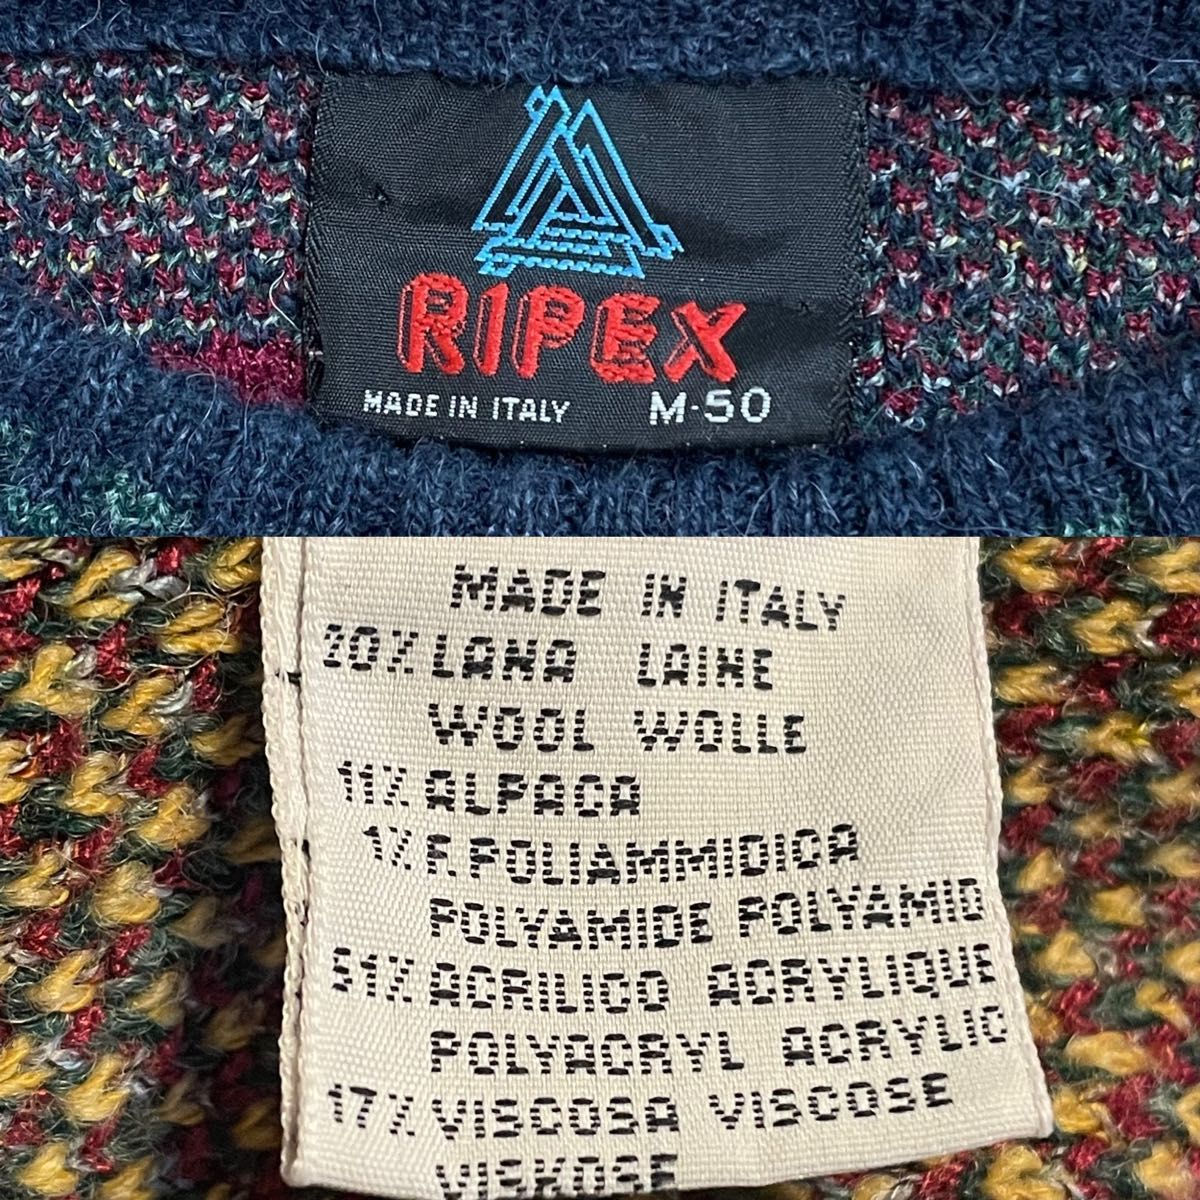 RIPEX イタリア製 柄ニット 柄物 セーター デザインニット マルチカラー 個性的 アクリル ウール ITALY EU古着 